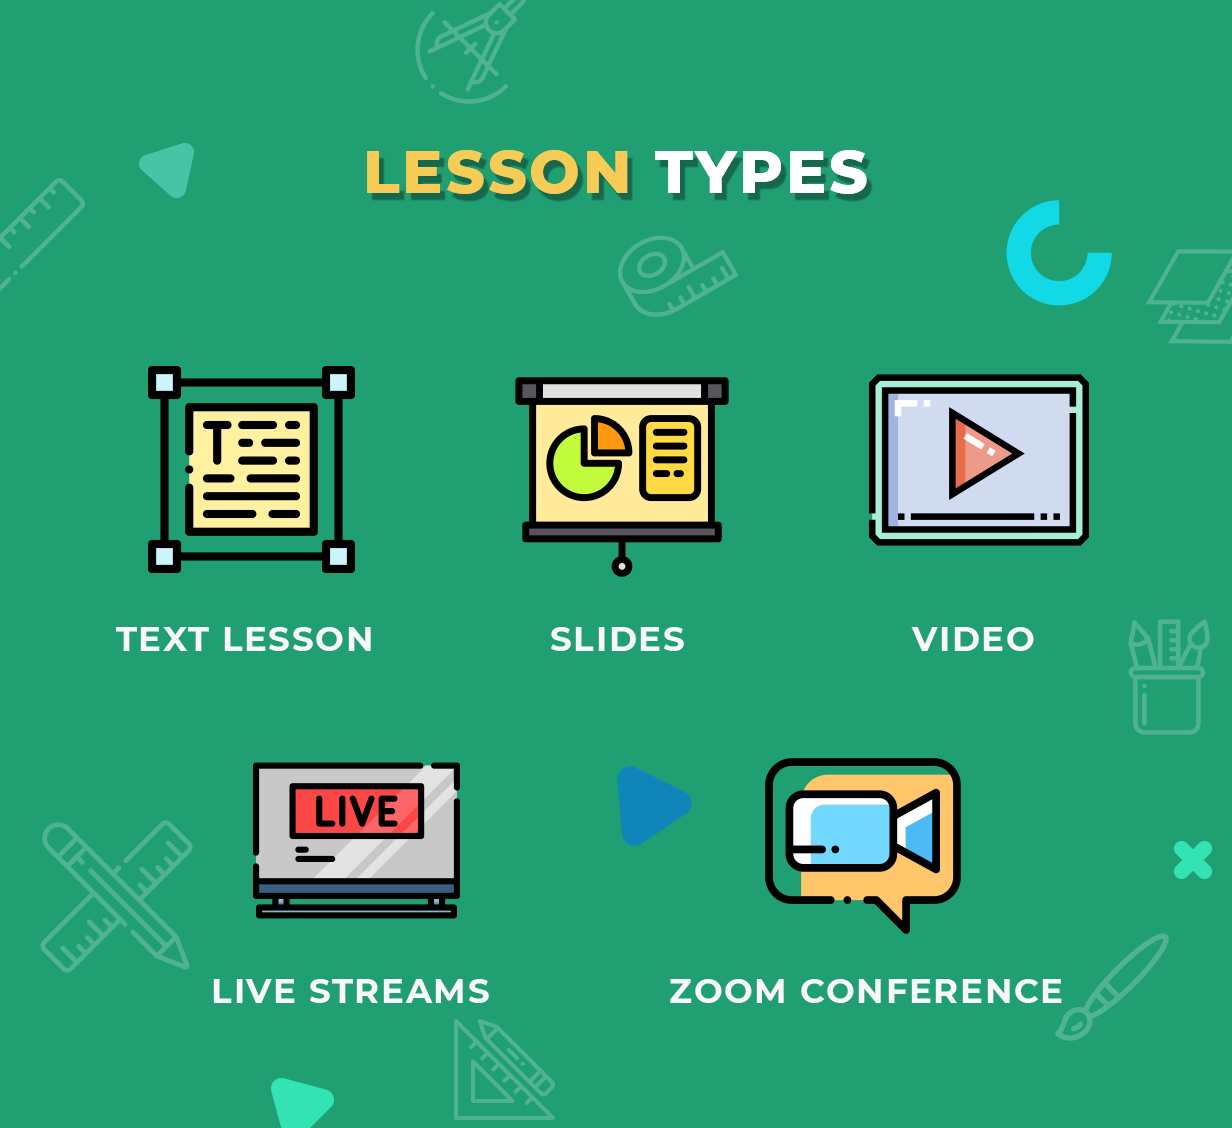 Education WordPress Theme - Lesson Types